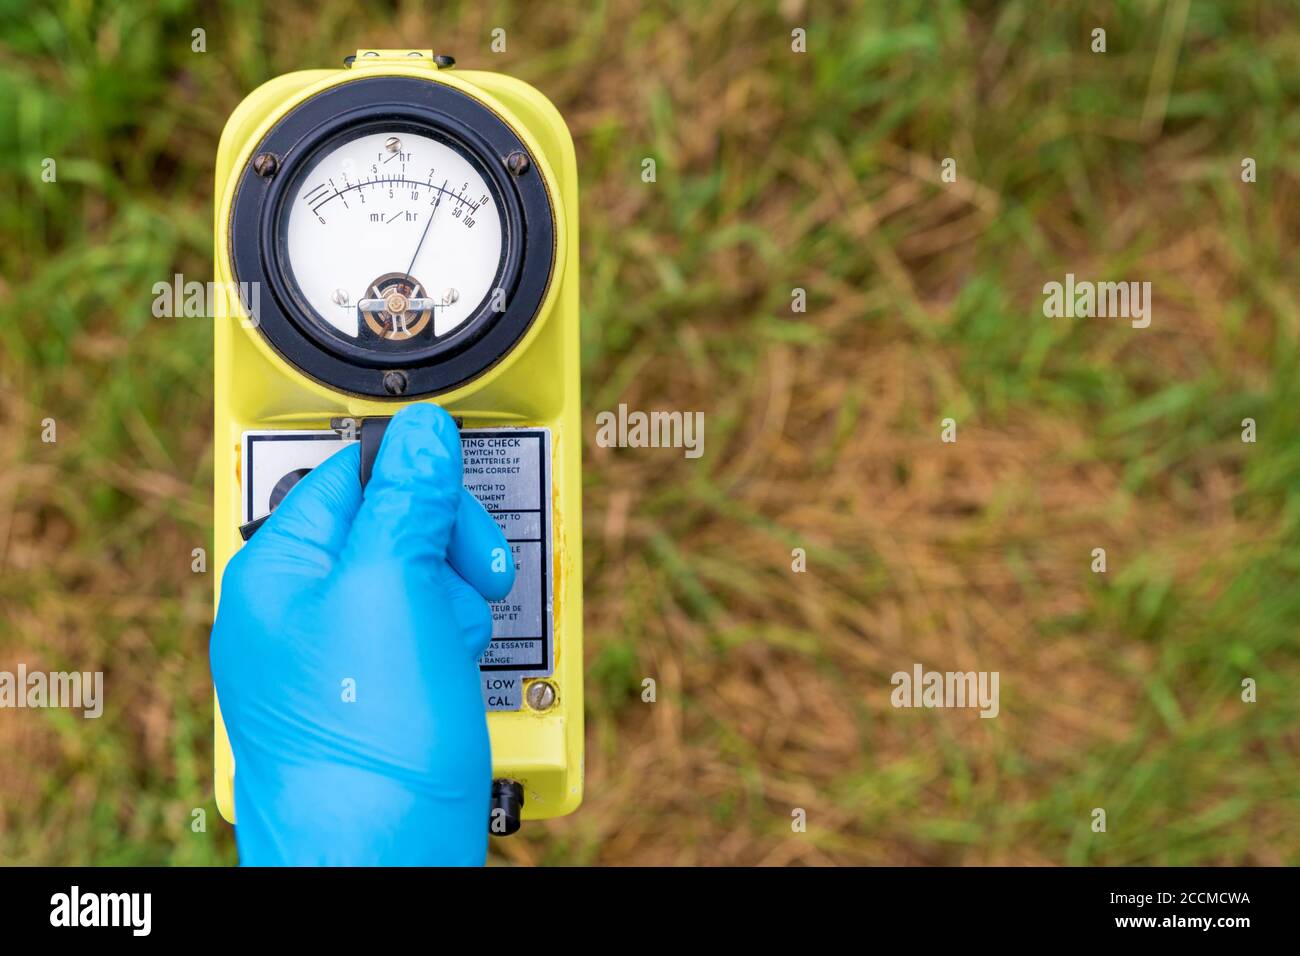 Una mano blu con guanti contiene un radiometro. Il misuratore mostra un livello elevato di radiazione. Erba sullo sfondo, la maggior parte dei quali è marrone e morta. Foto Stock